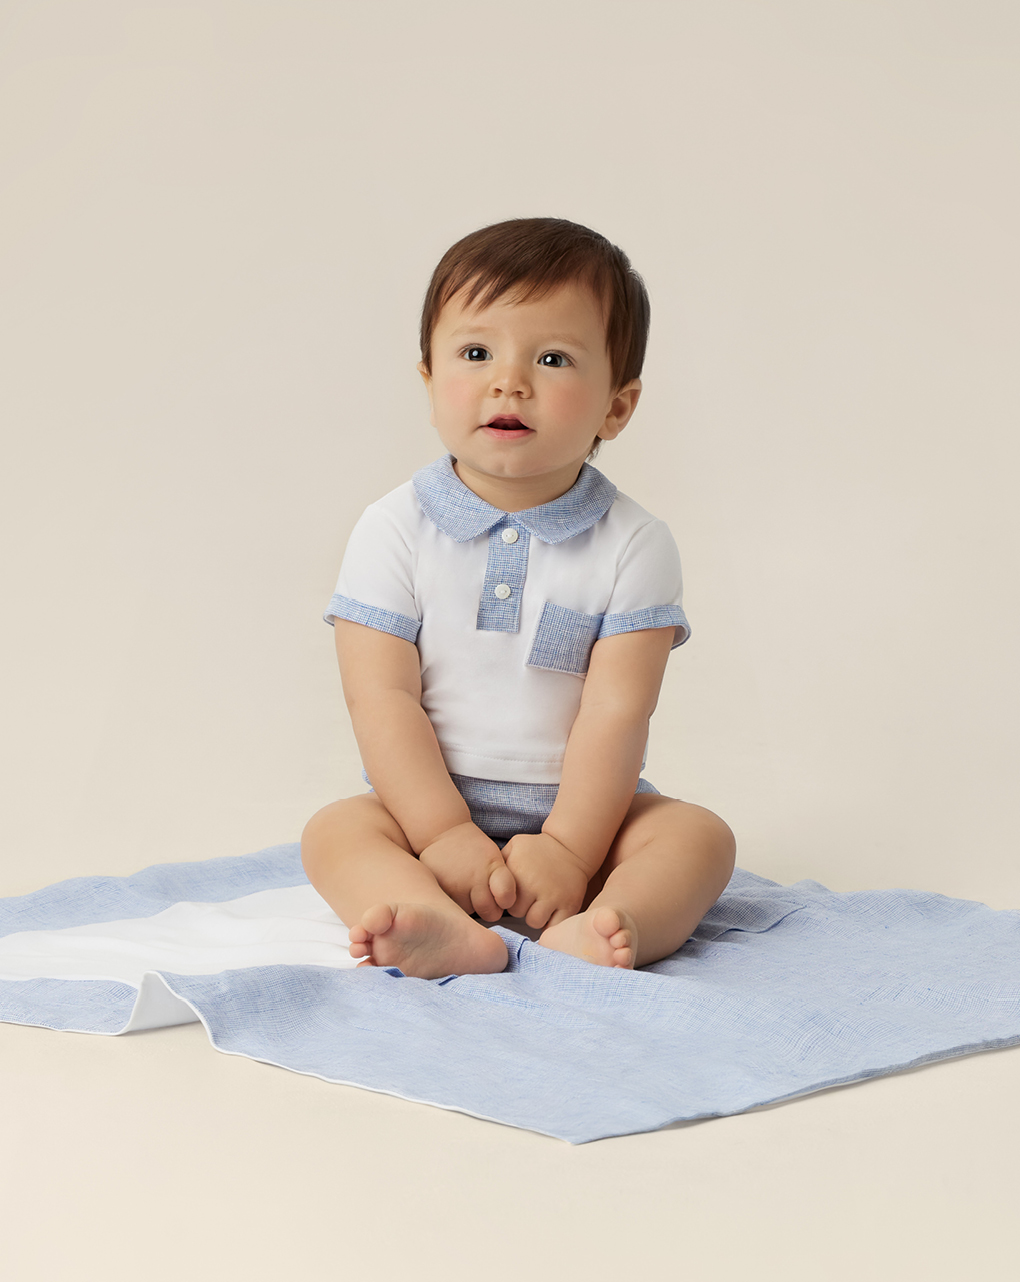 Camisolas para bebés feitas de linho e algodão sustentáveis - Prénatal